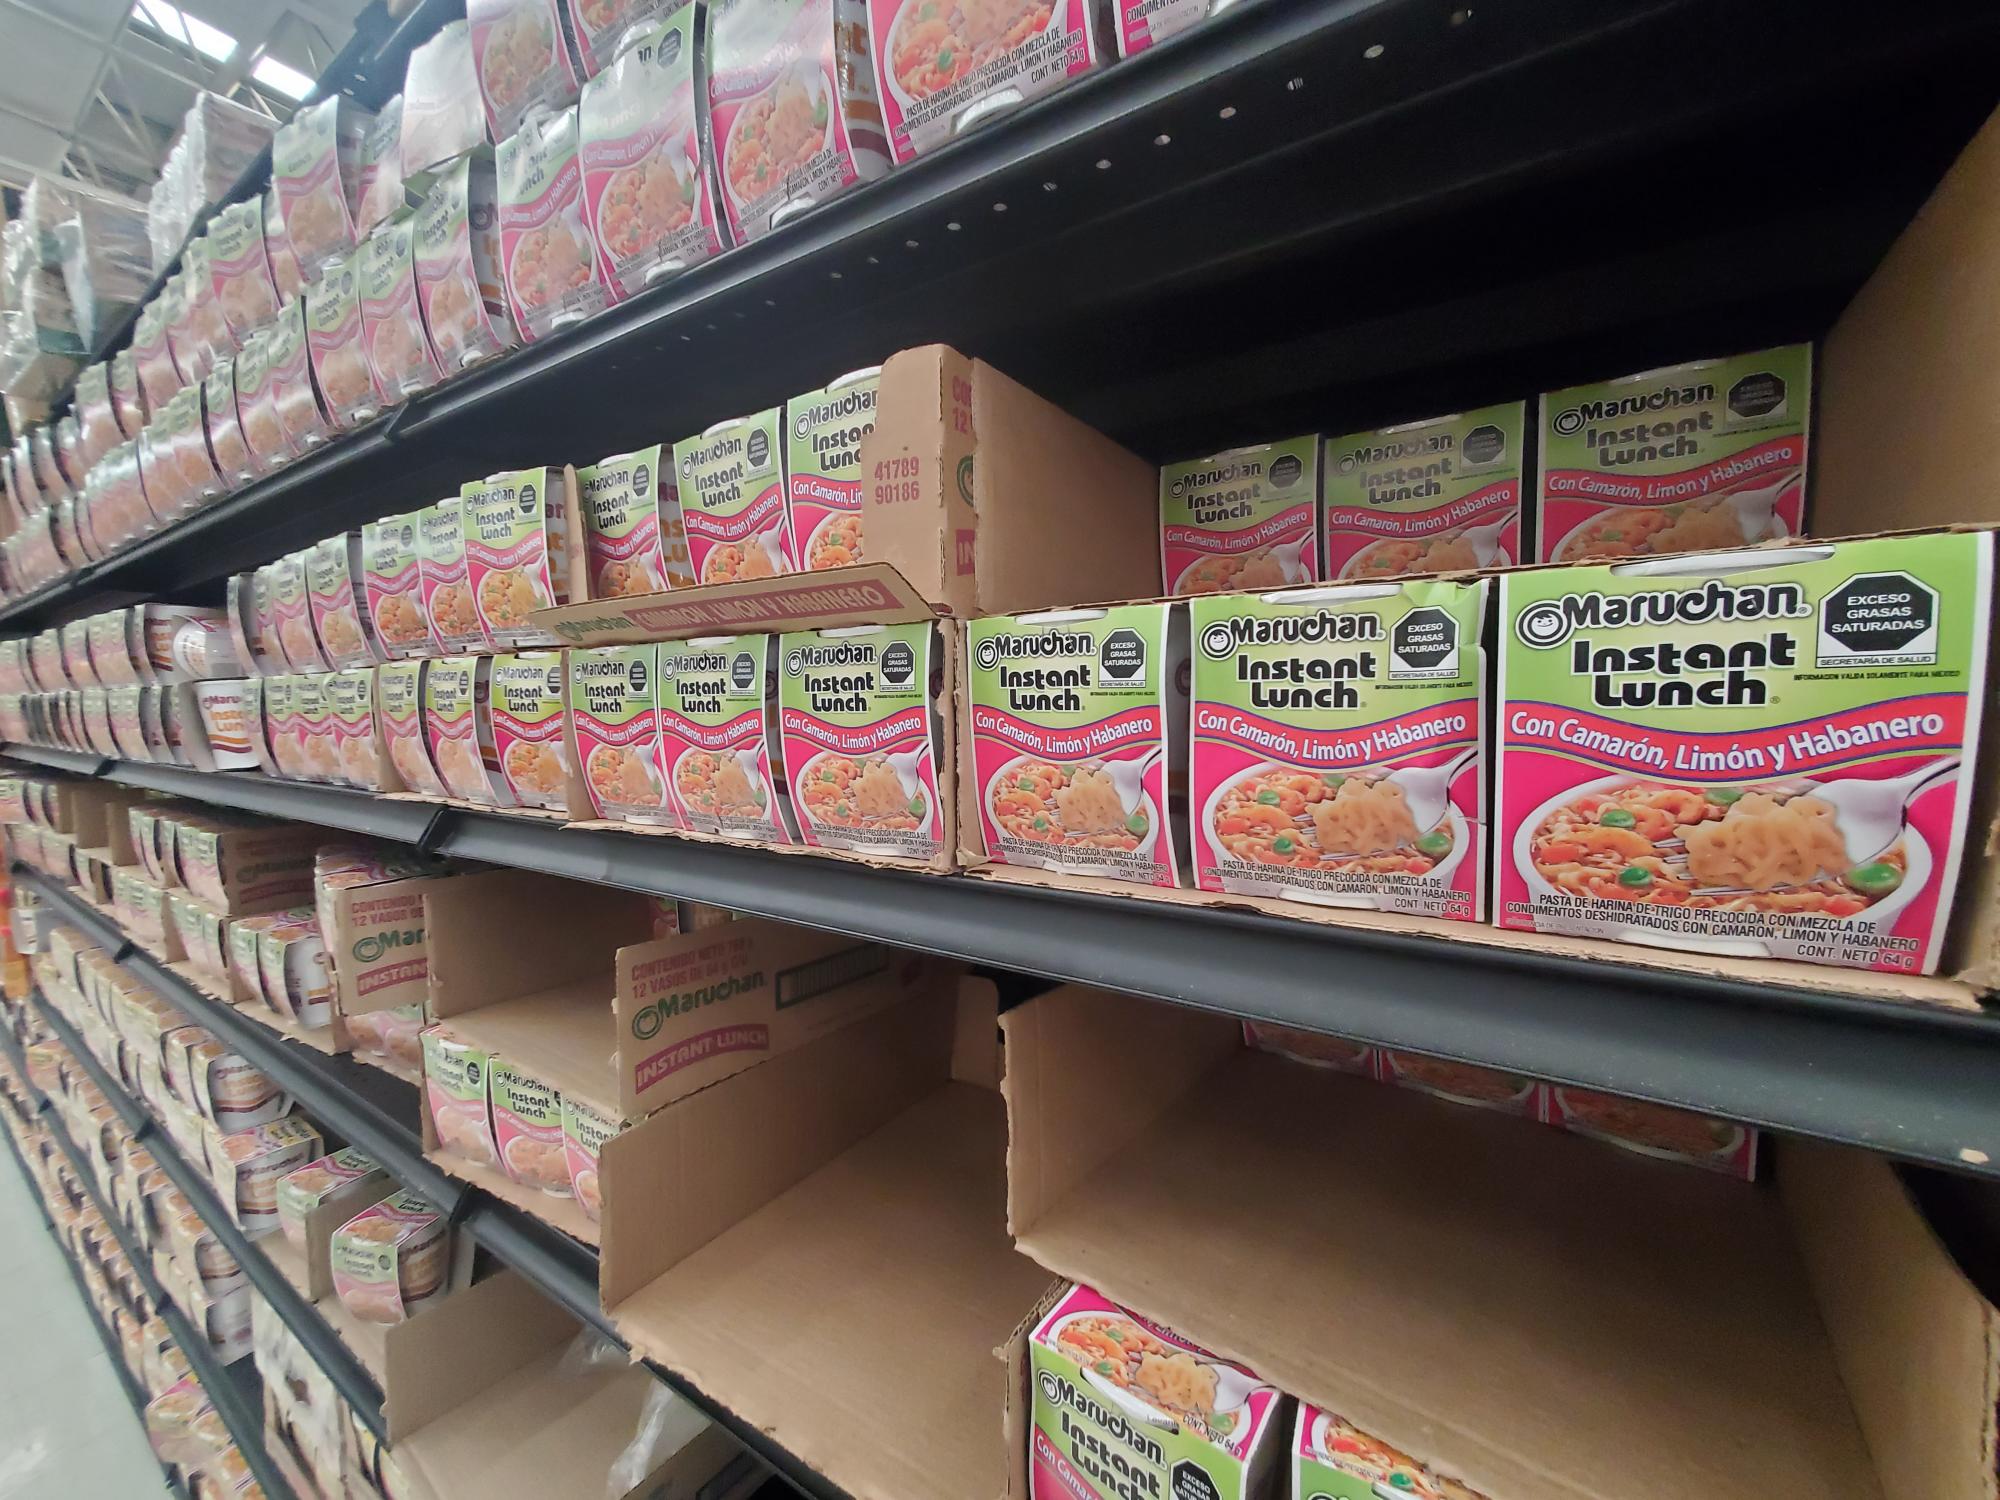 $!Ante anuncio de Profeco de retirar del mercado las sopas instantáneas, supermercados de Mazatlán llenan sus anaqueles